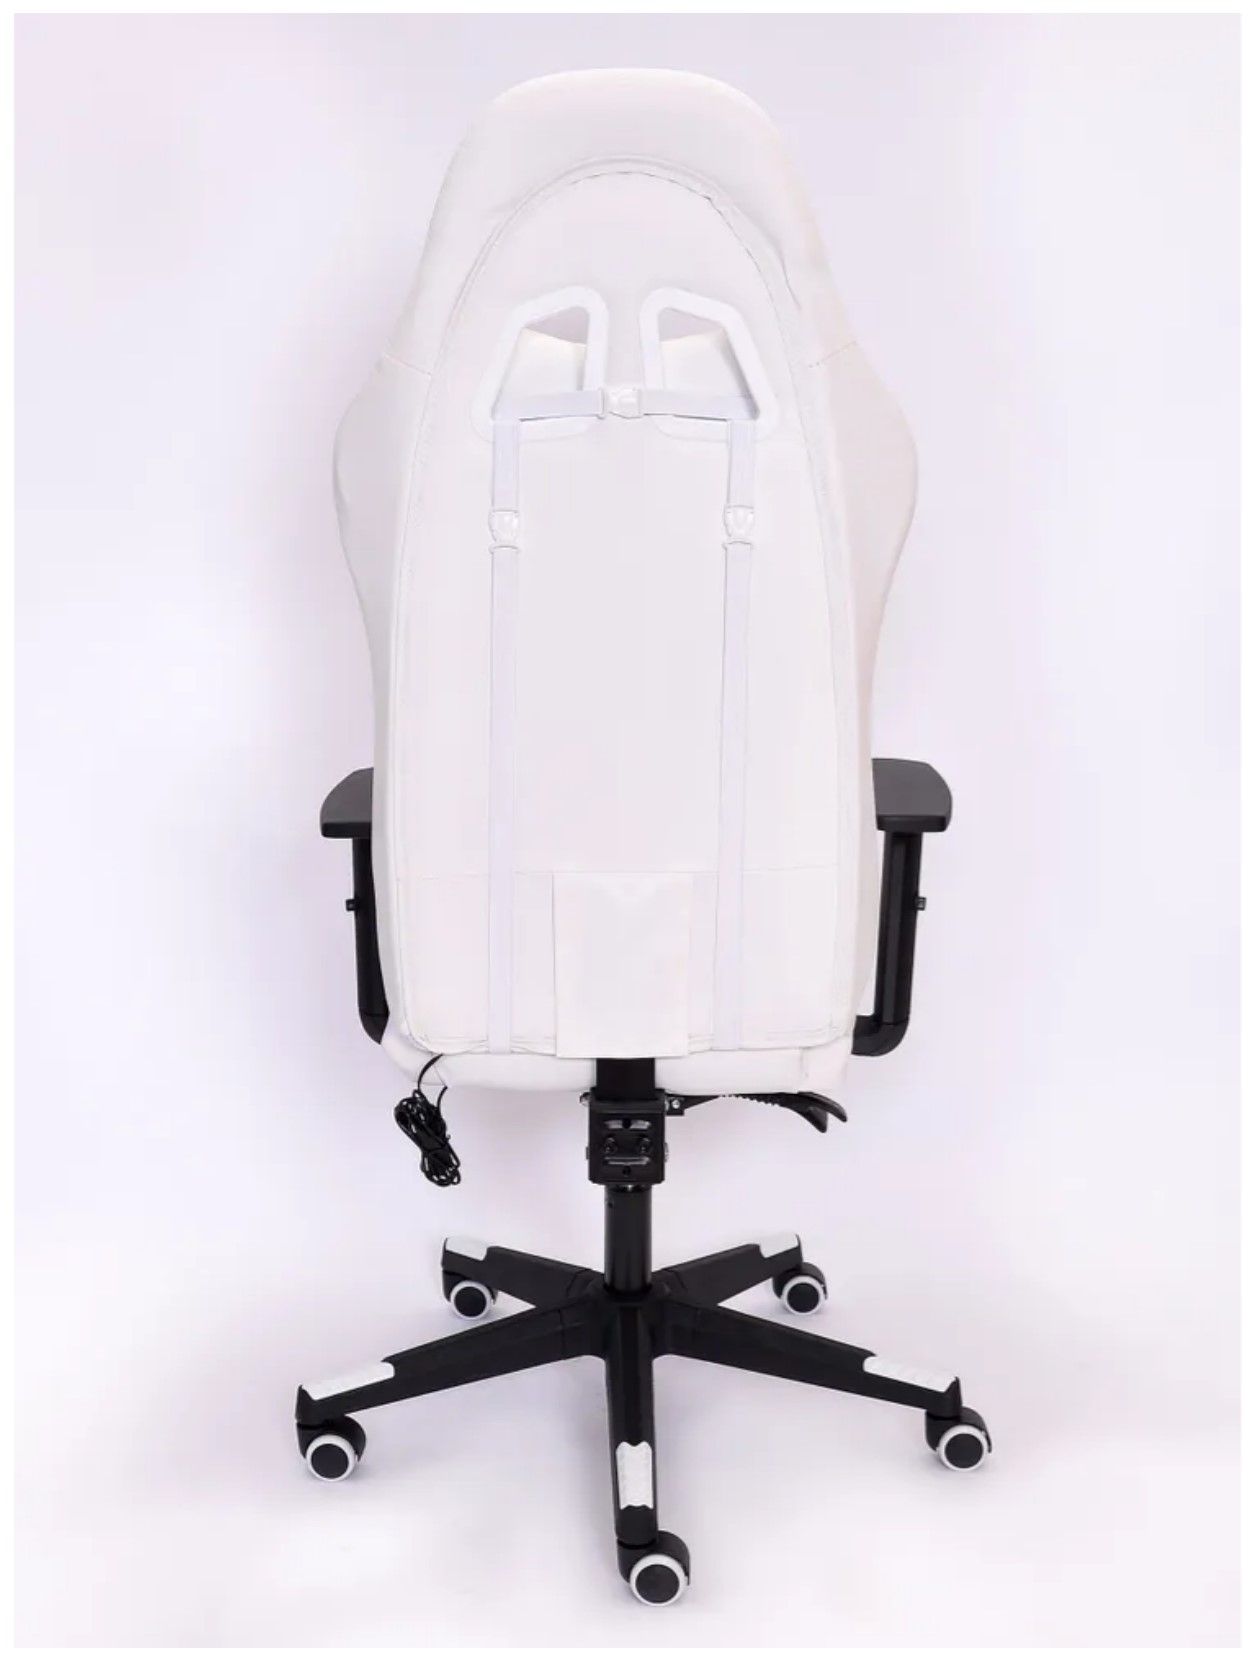 Игровое кресло Emperor camp с RGB подсветкой, белое